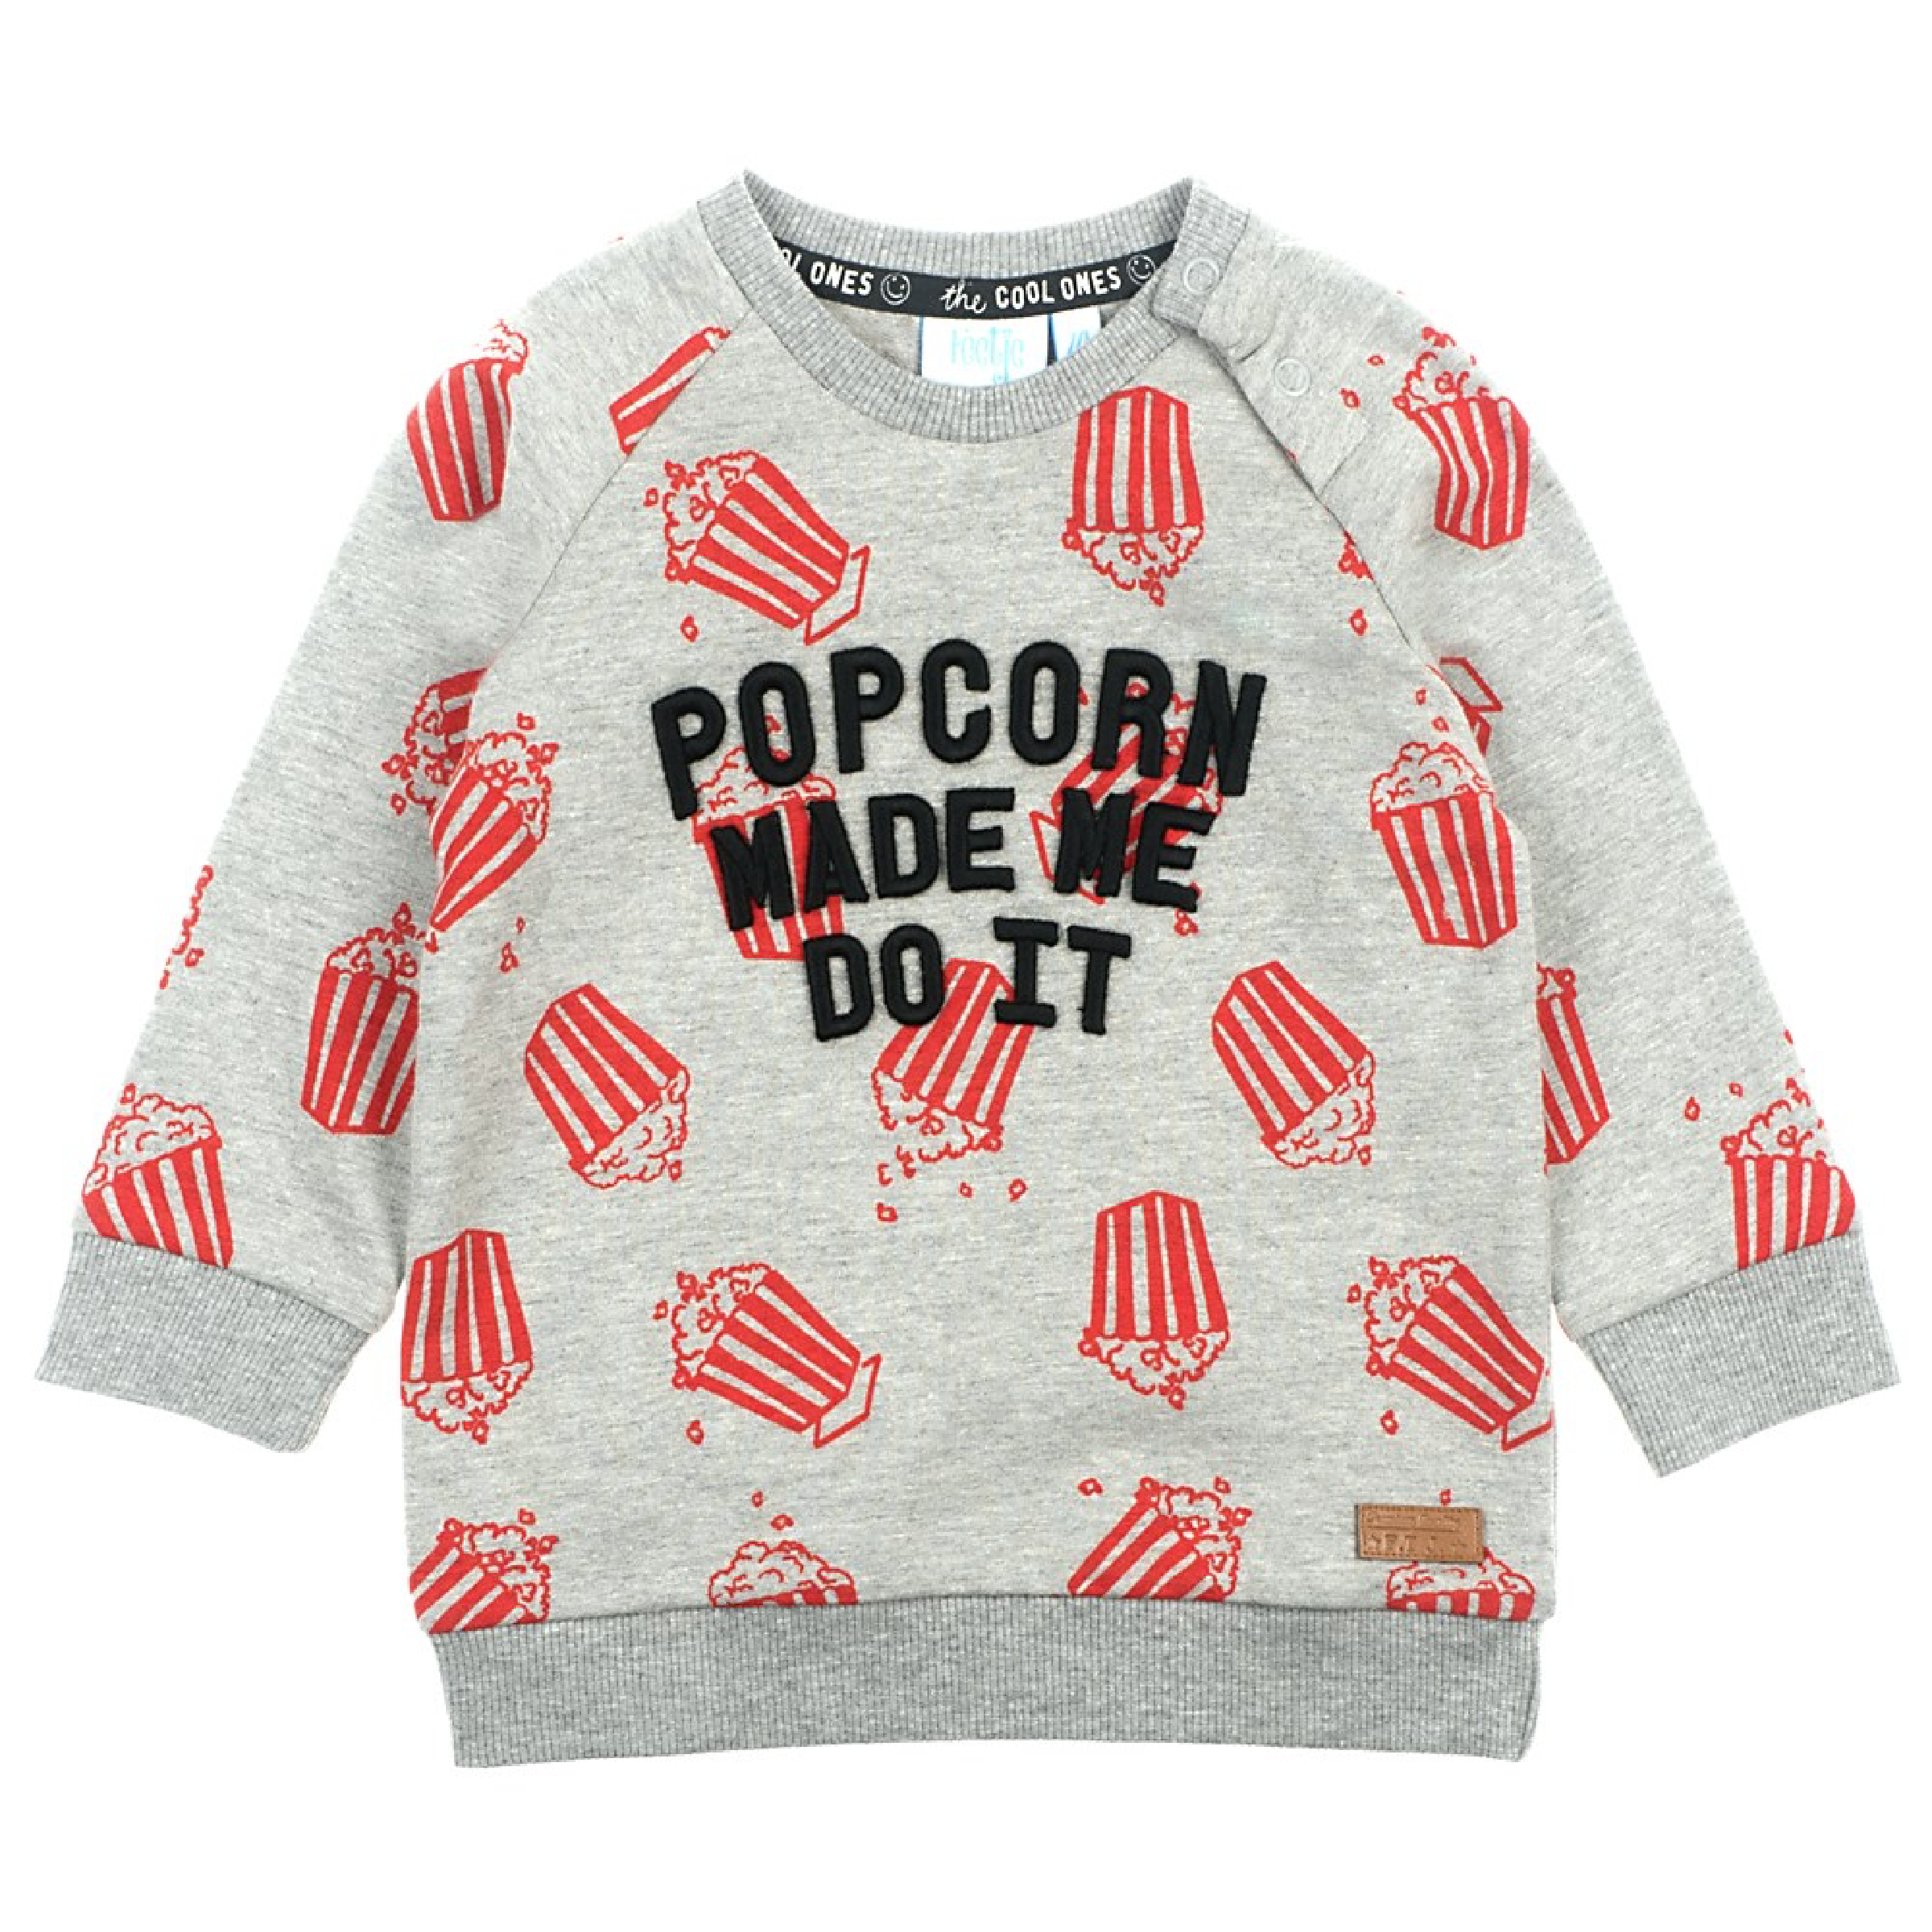 Jongens Sweater Made Me - Popcorn Party van Feetje in de kleur Grijs melange in maat 86.